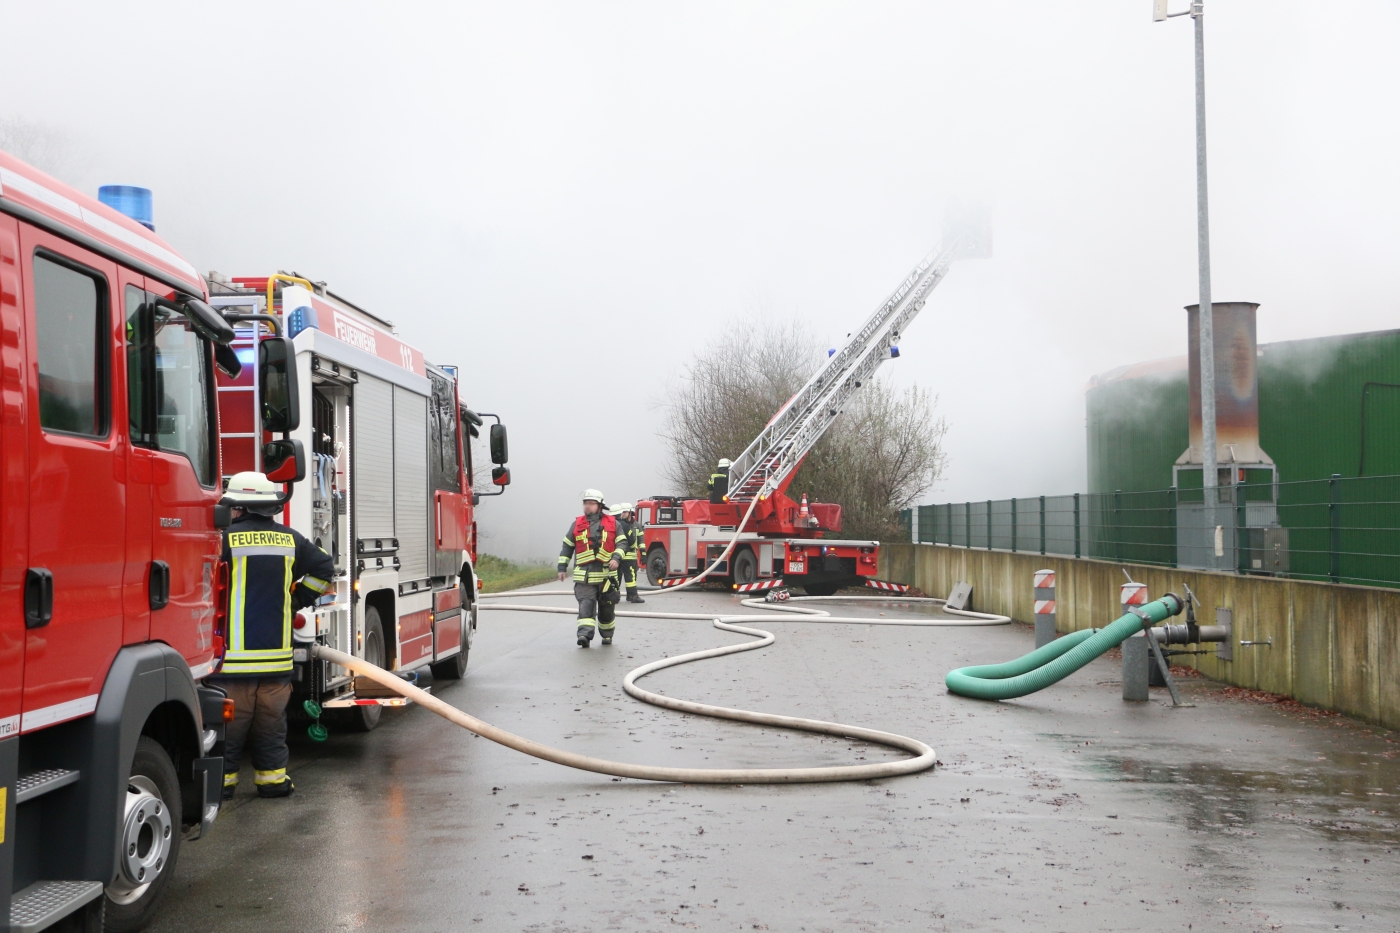 Brand in Biogasanlage in Melle, mehrere Feuerwehren im Einsatz